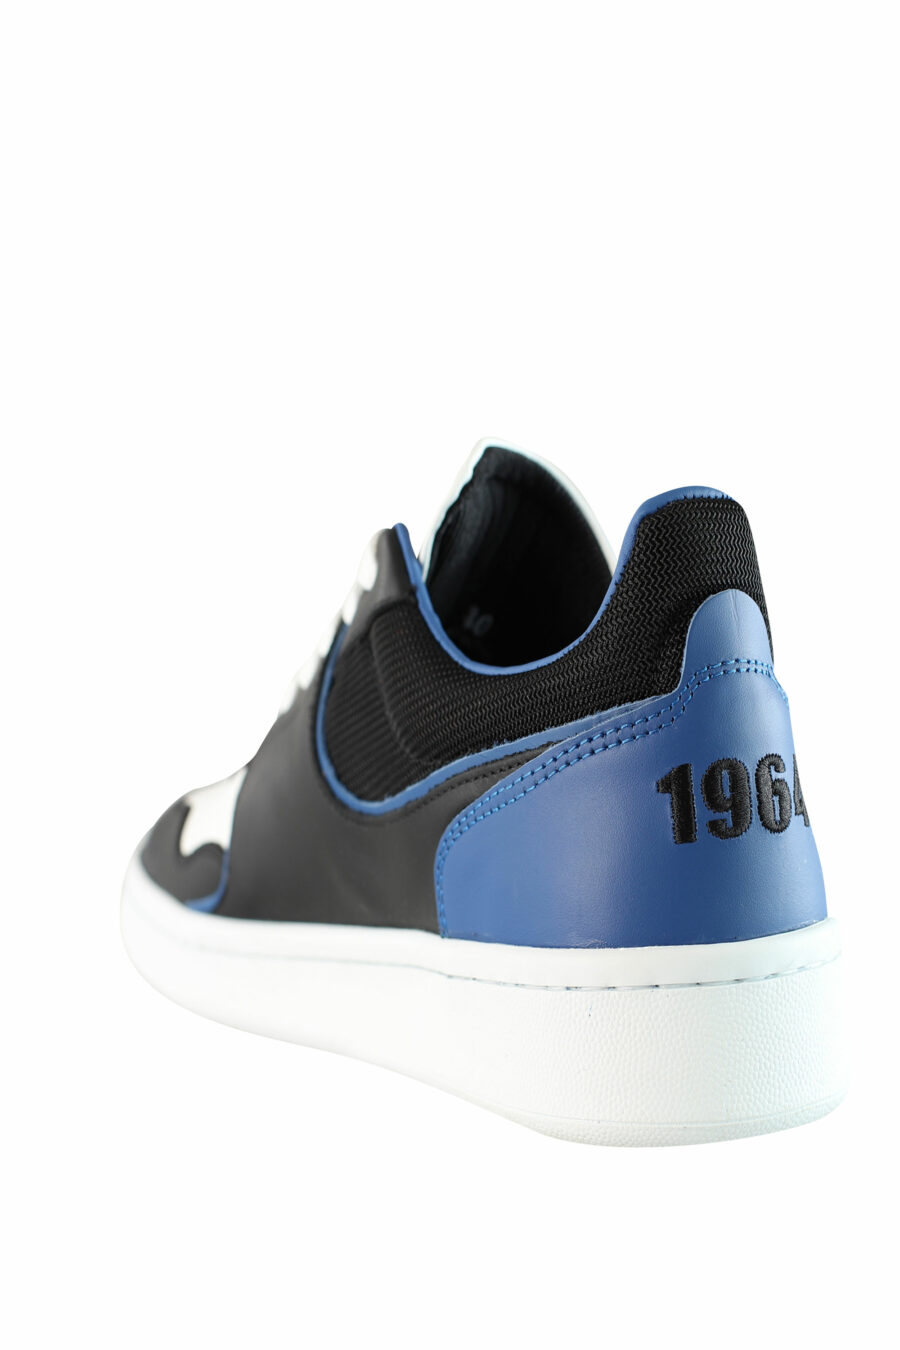 Zapatillas bicolor negras y azules "boxer" con detalles en blanco - IMG 1544